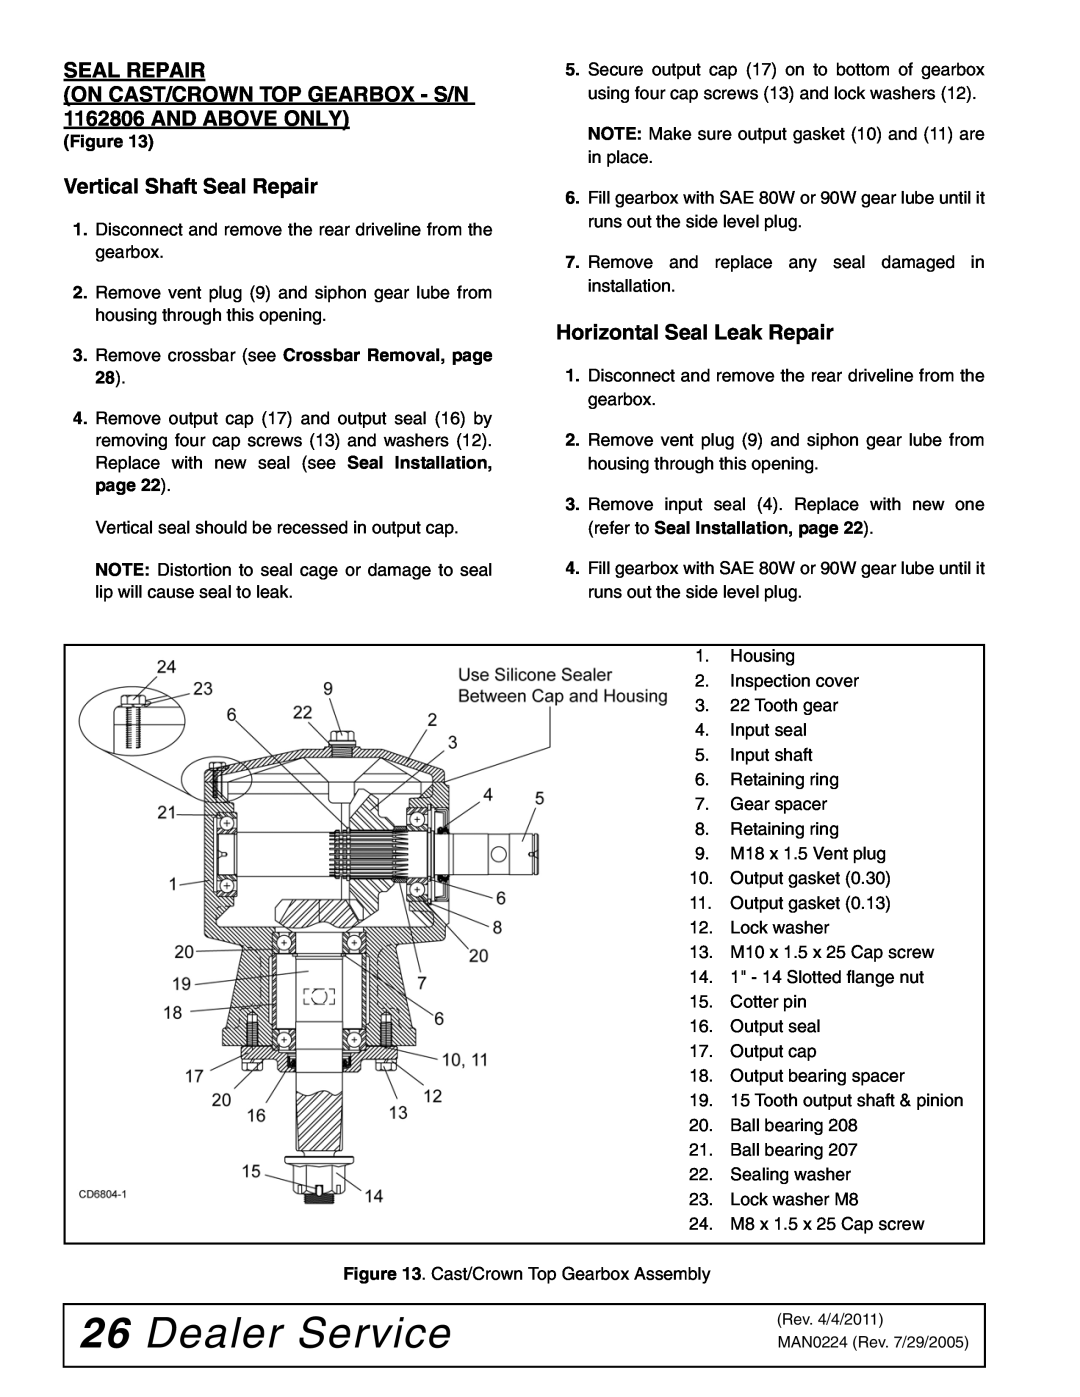 Woods Equipment RCC42 manual Dealer Service, Vertical Shaft Seal Repair, Horizontal Seal Leak Repair 